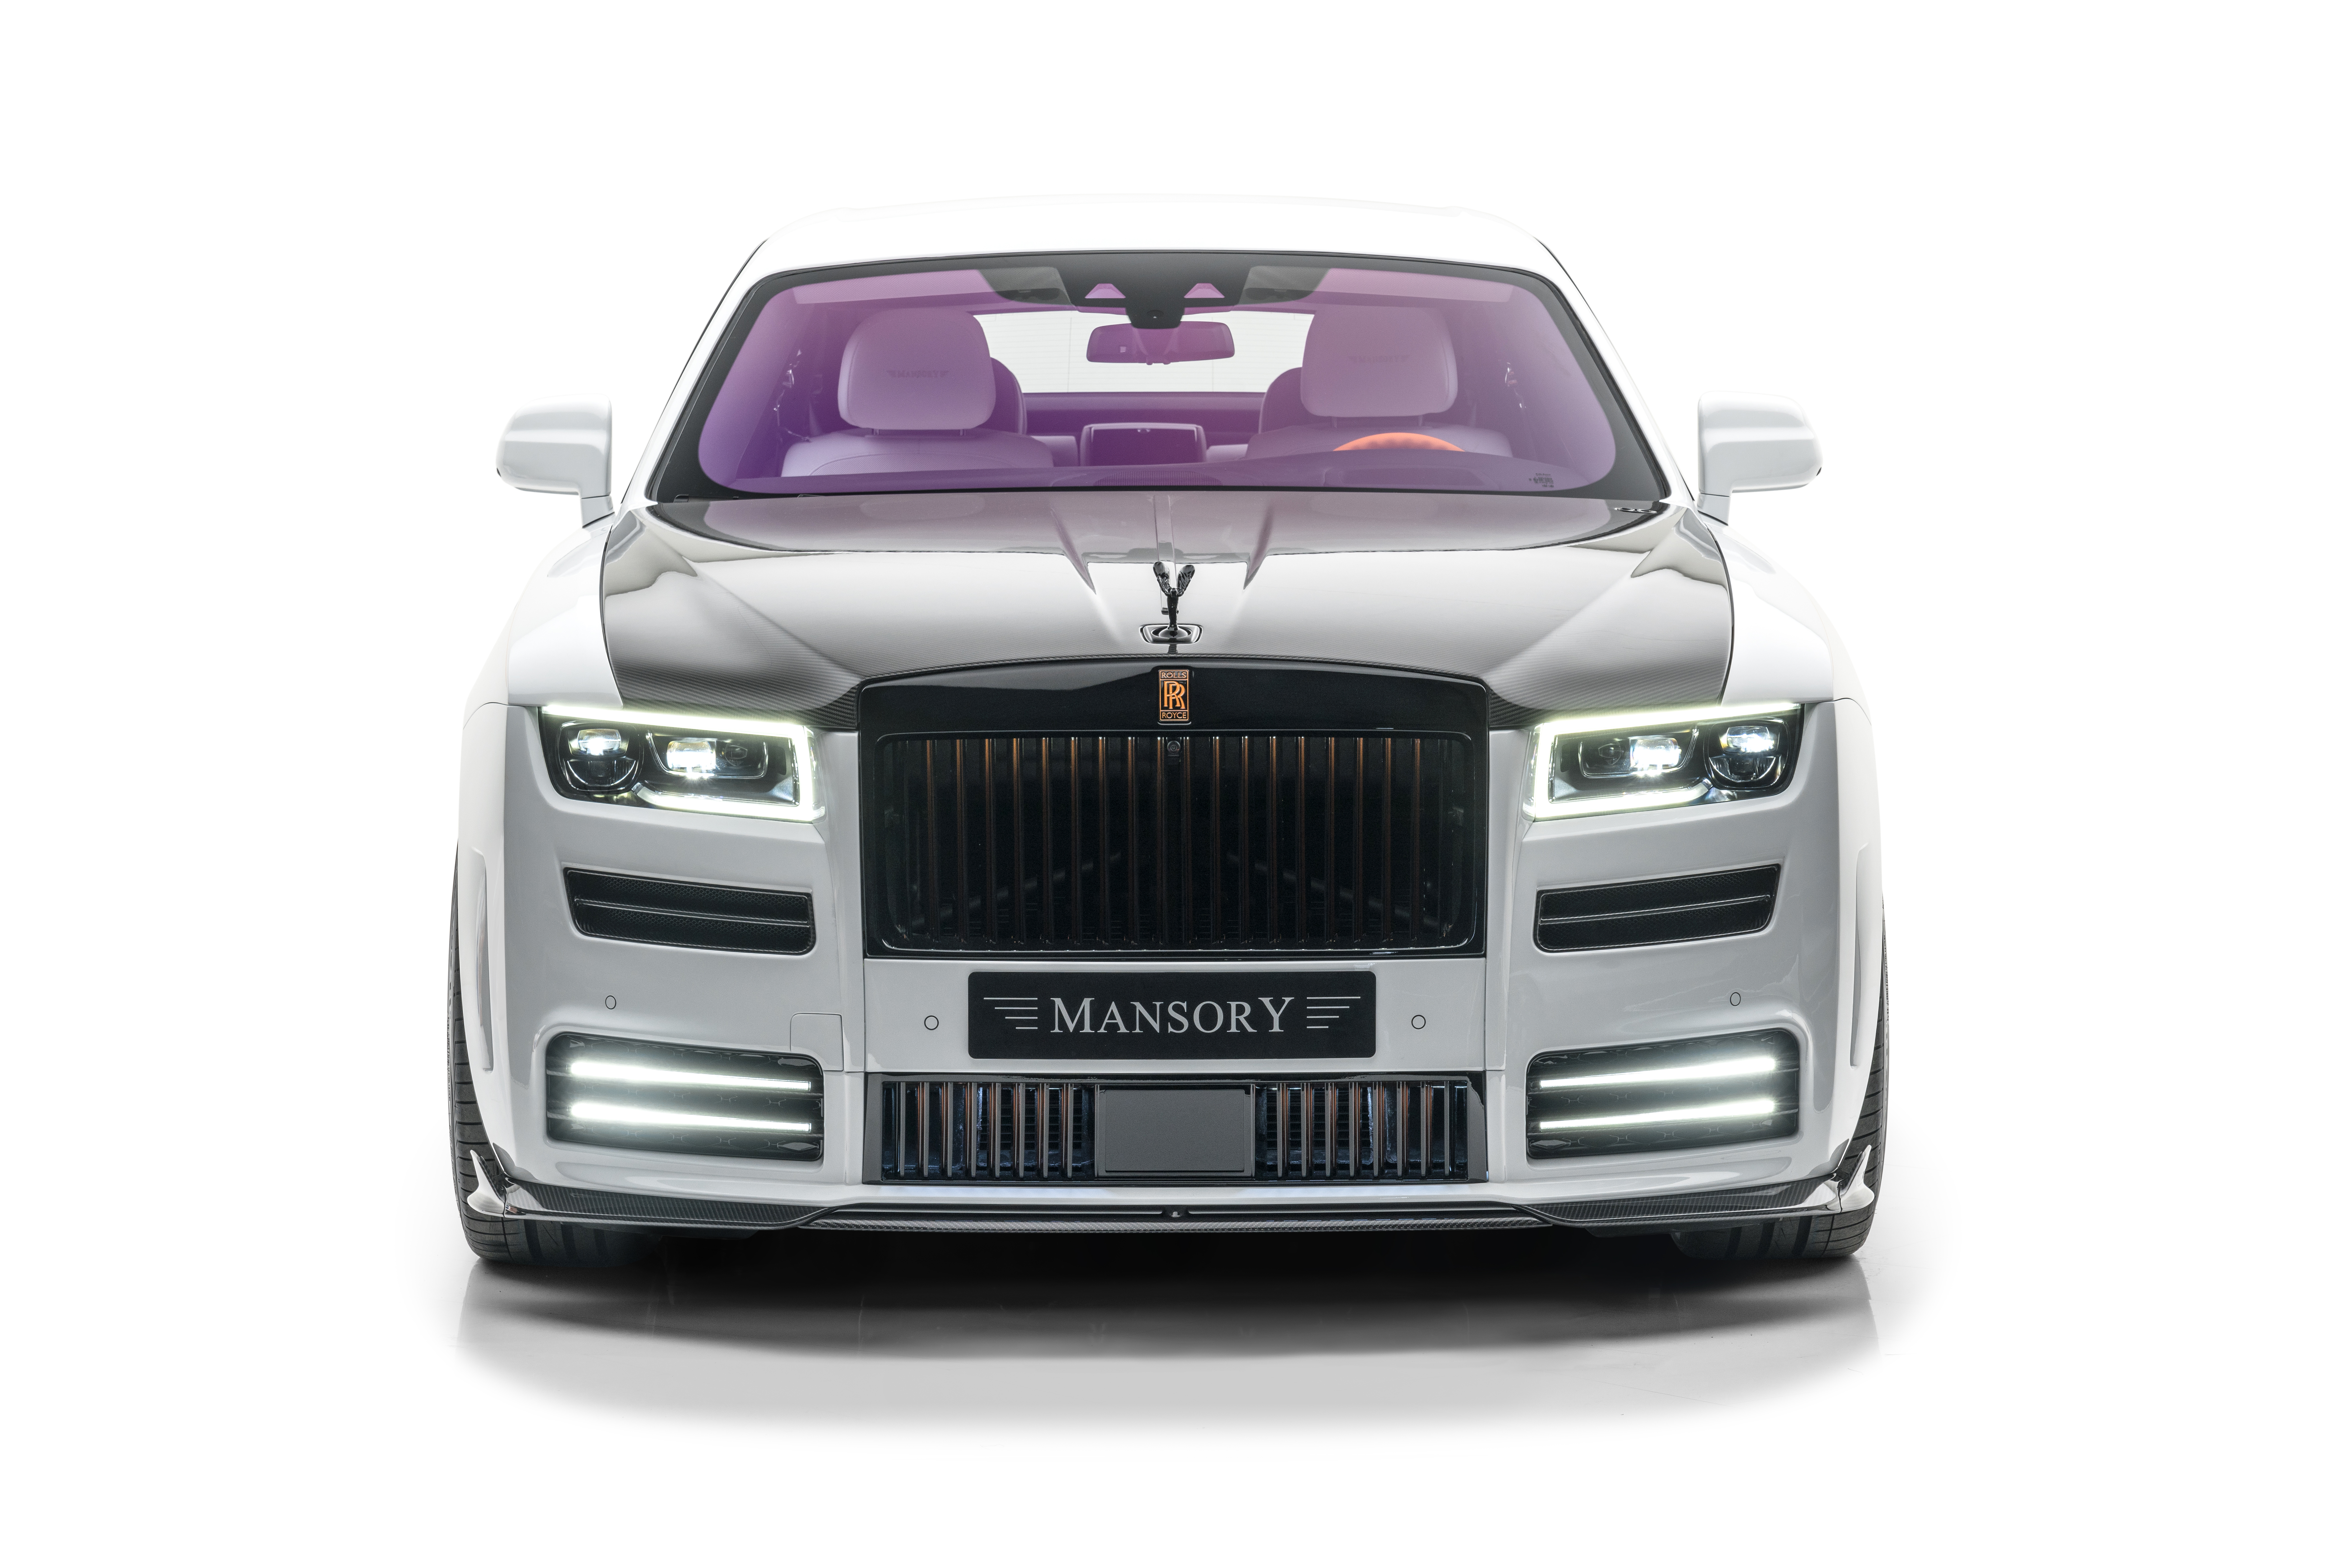 Descarga gratuita de fondo de pantalla para móvil de Rolls Royce, Fantasma De Rolls Royce, Vehículos.